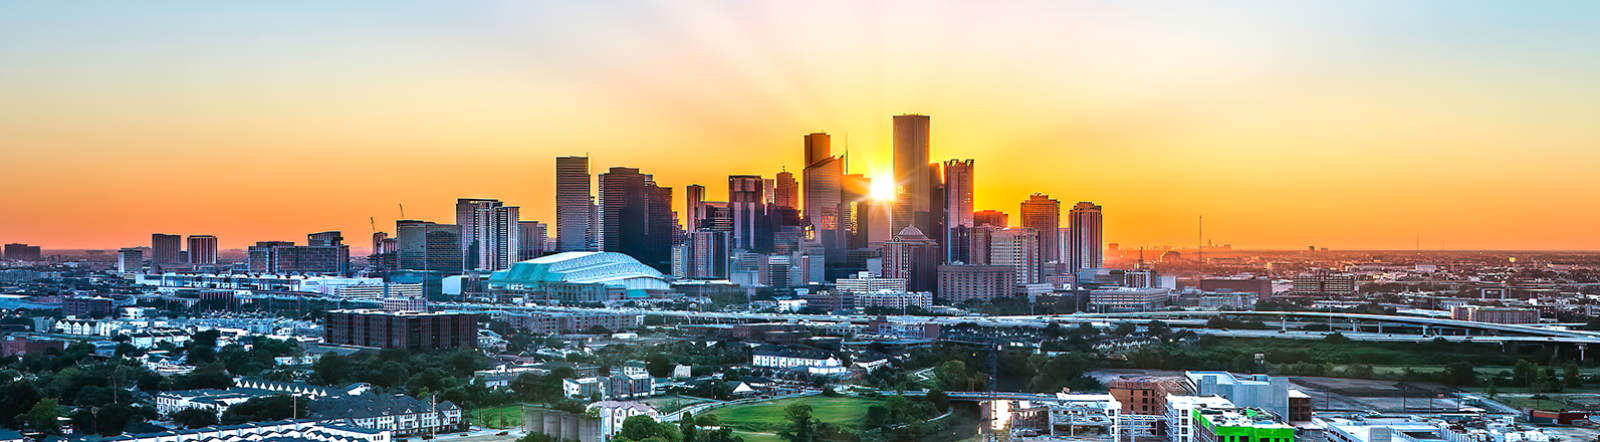 Image of Houston Skyline